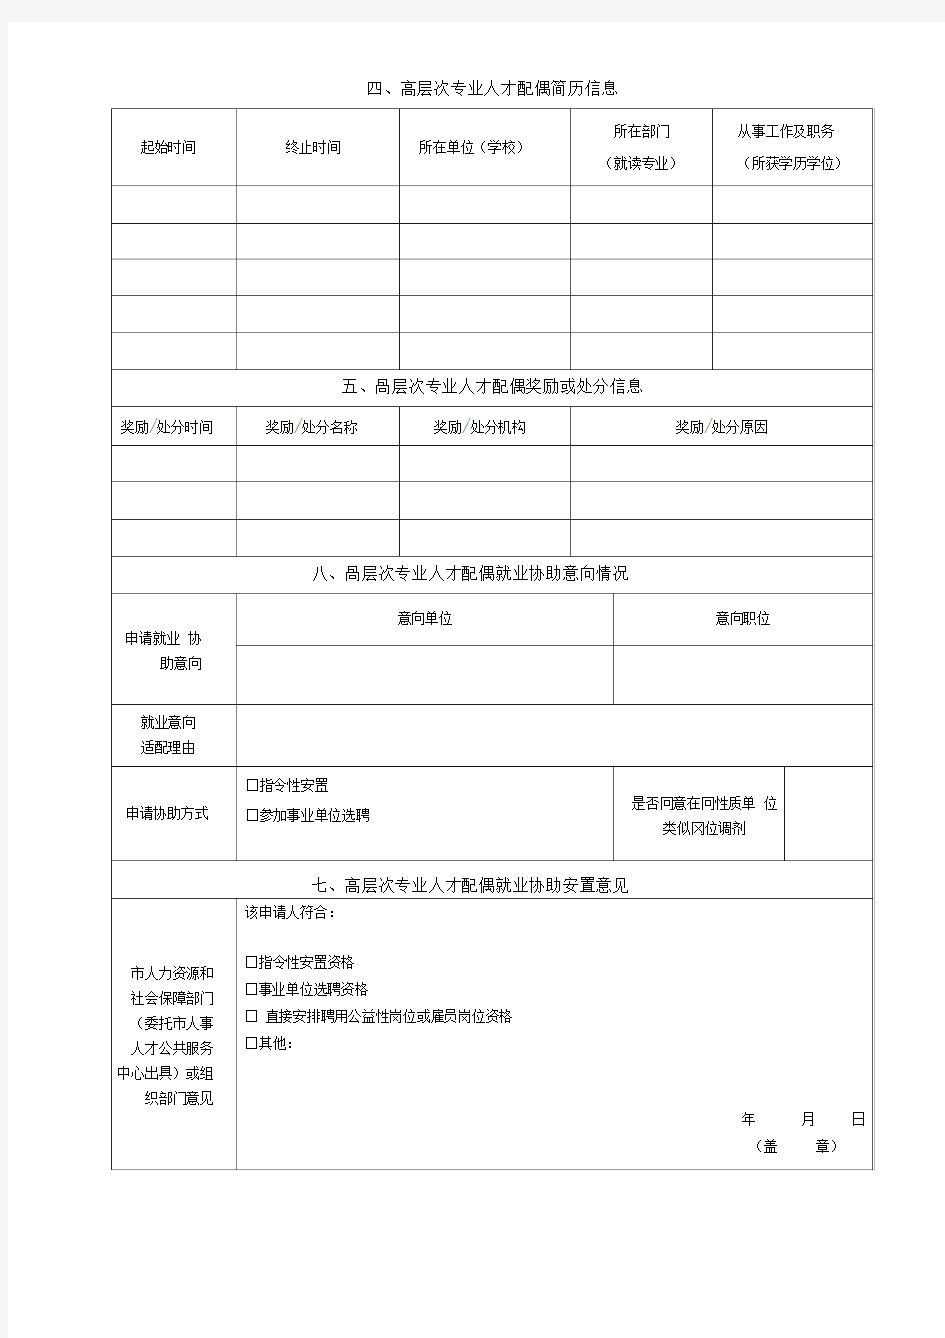 深圳市高层次专业人才配偶就业协助申请表